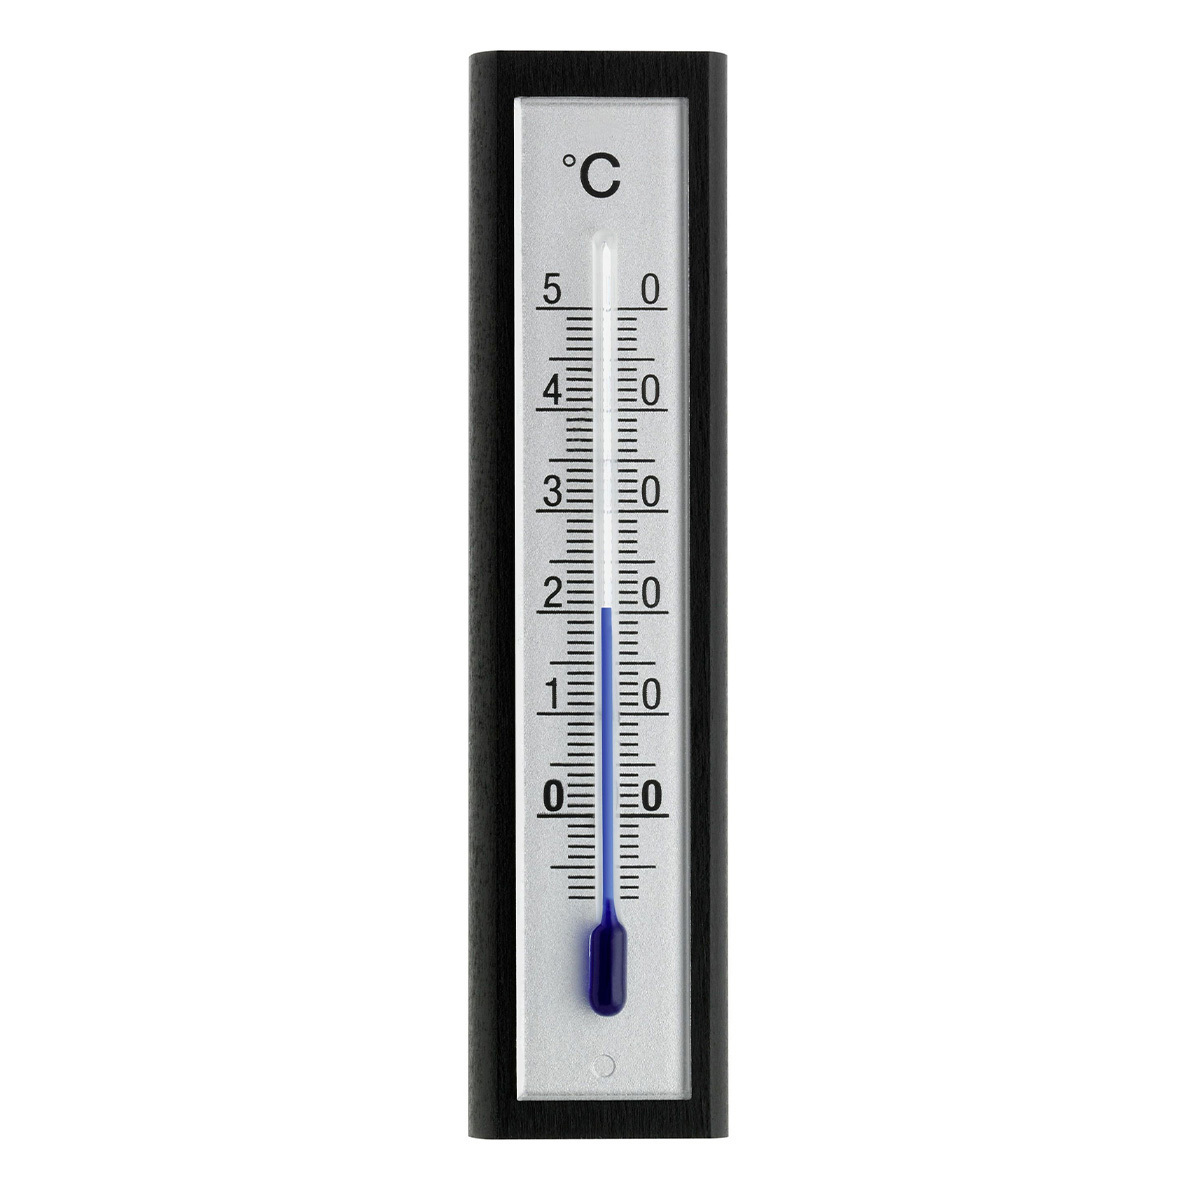 12-1043-06-analoges-innen-aussen-thermometer-buche-1200x1200px.jpg